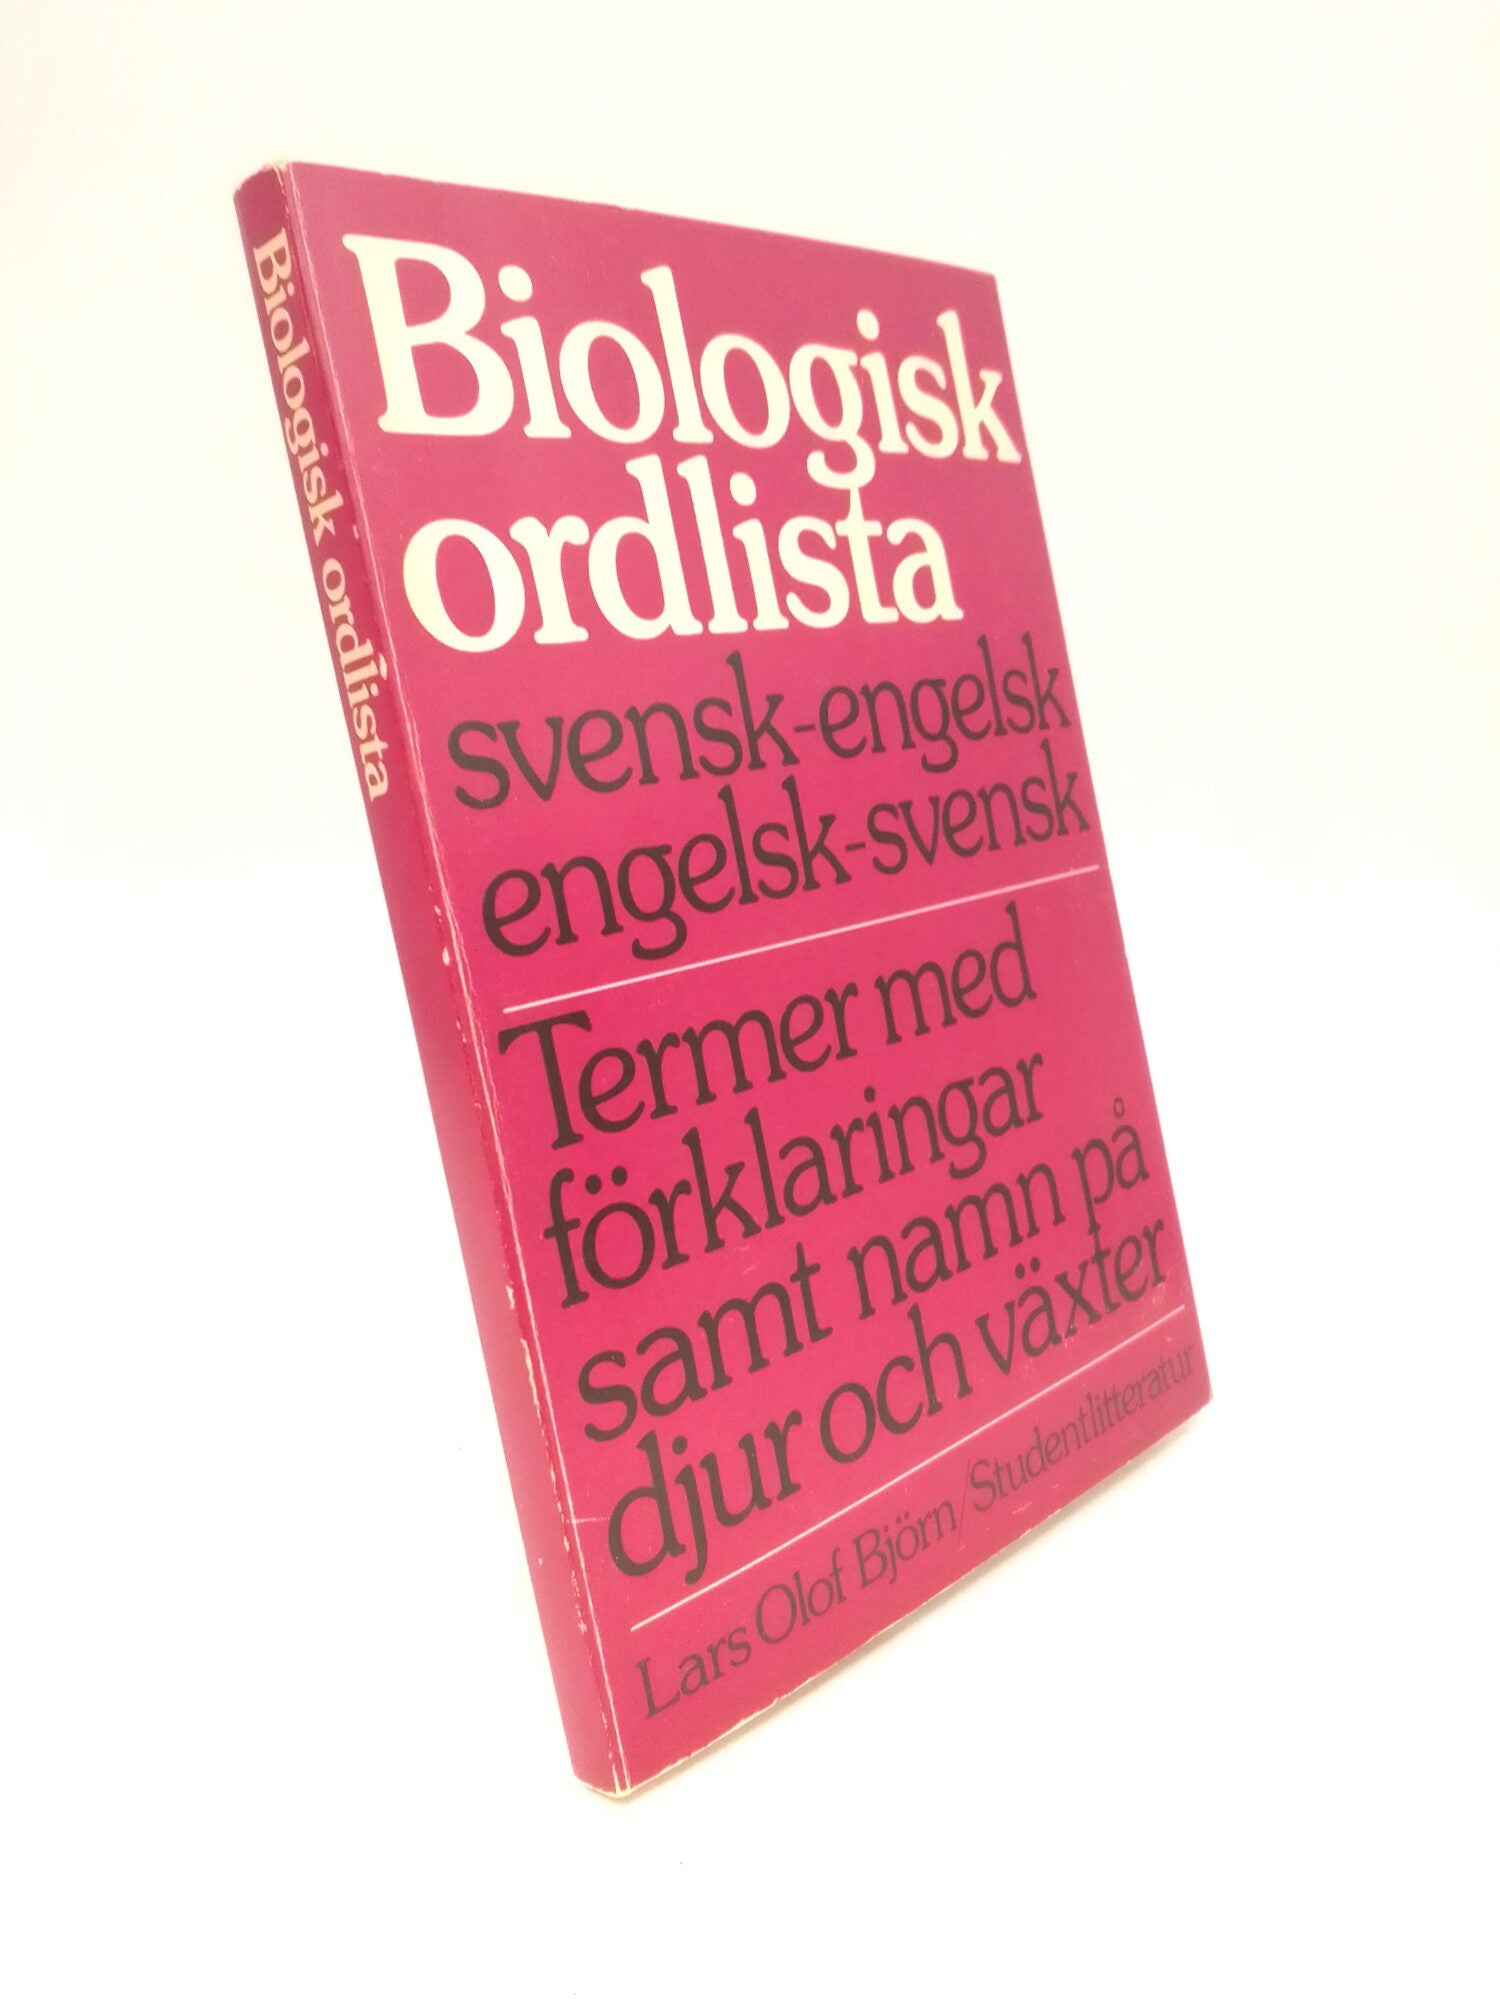 Björn, Lars Olof | Biologisk ordlista : Svensk-engelsk/engelsk-svensk : termer med förklaringar samt namn på djur och vä...